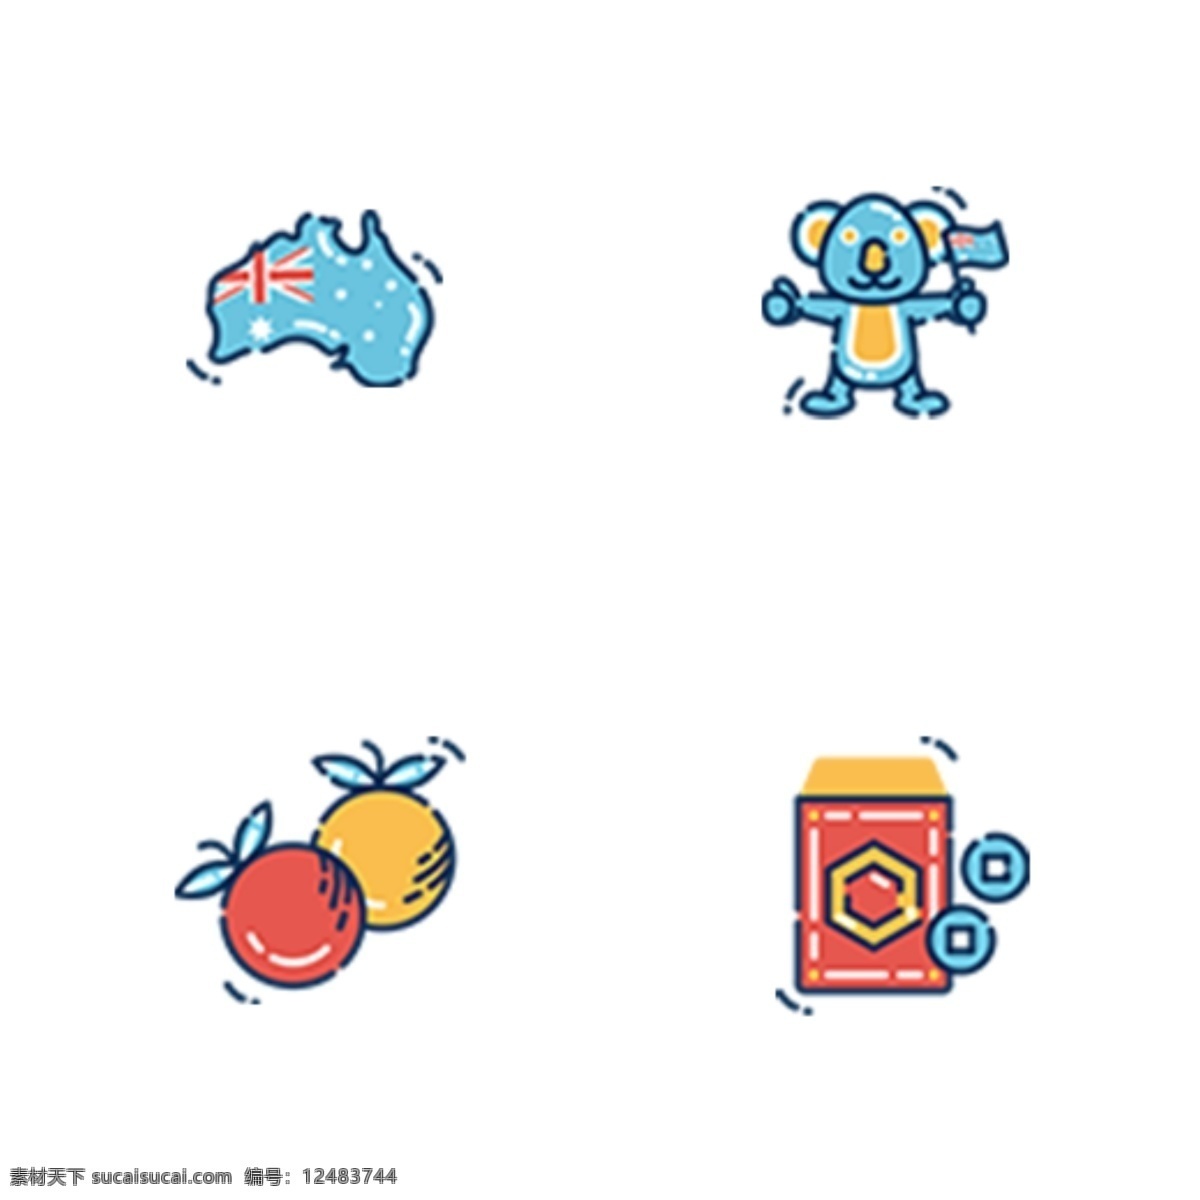 彩色 澳大利亚 风格 中国 节日 图标 元素 扁平化 ui图标 卡通插画 传统节日 鸭嘴兽 动物 旗帜